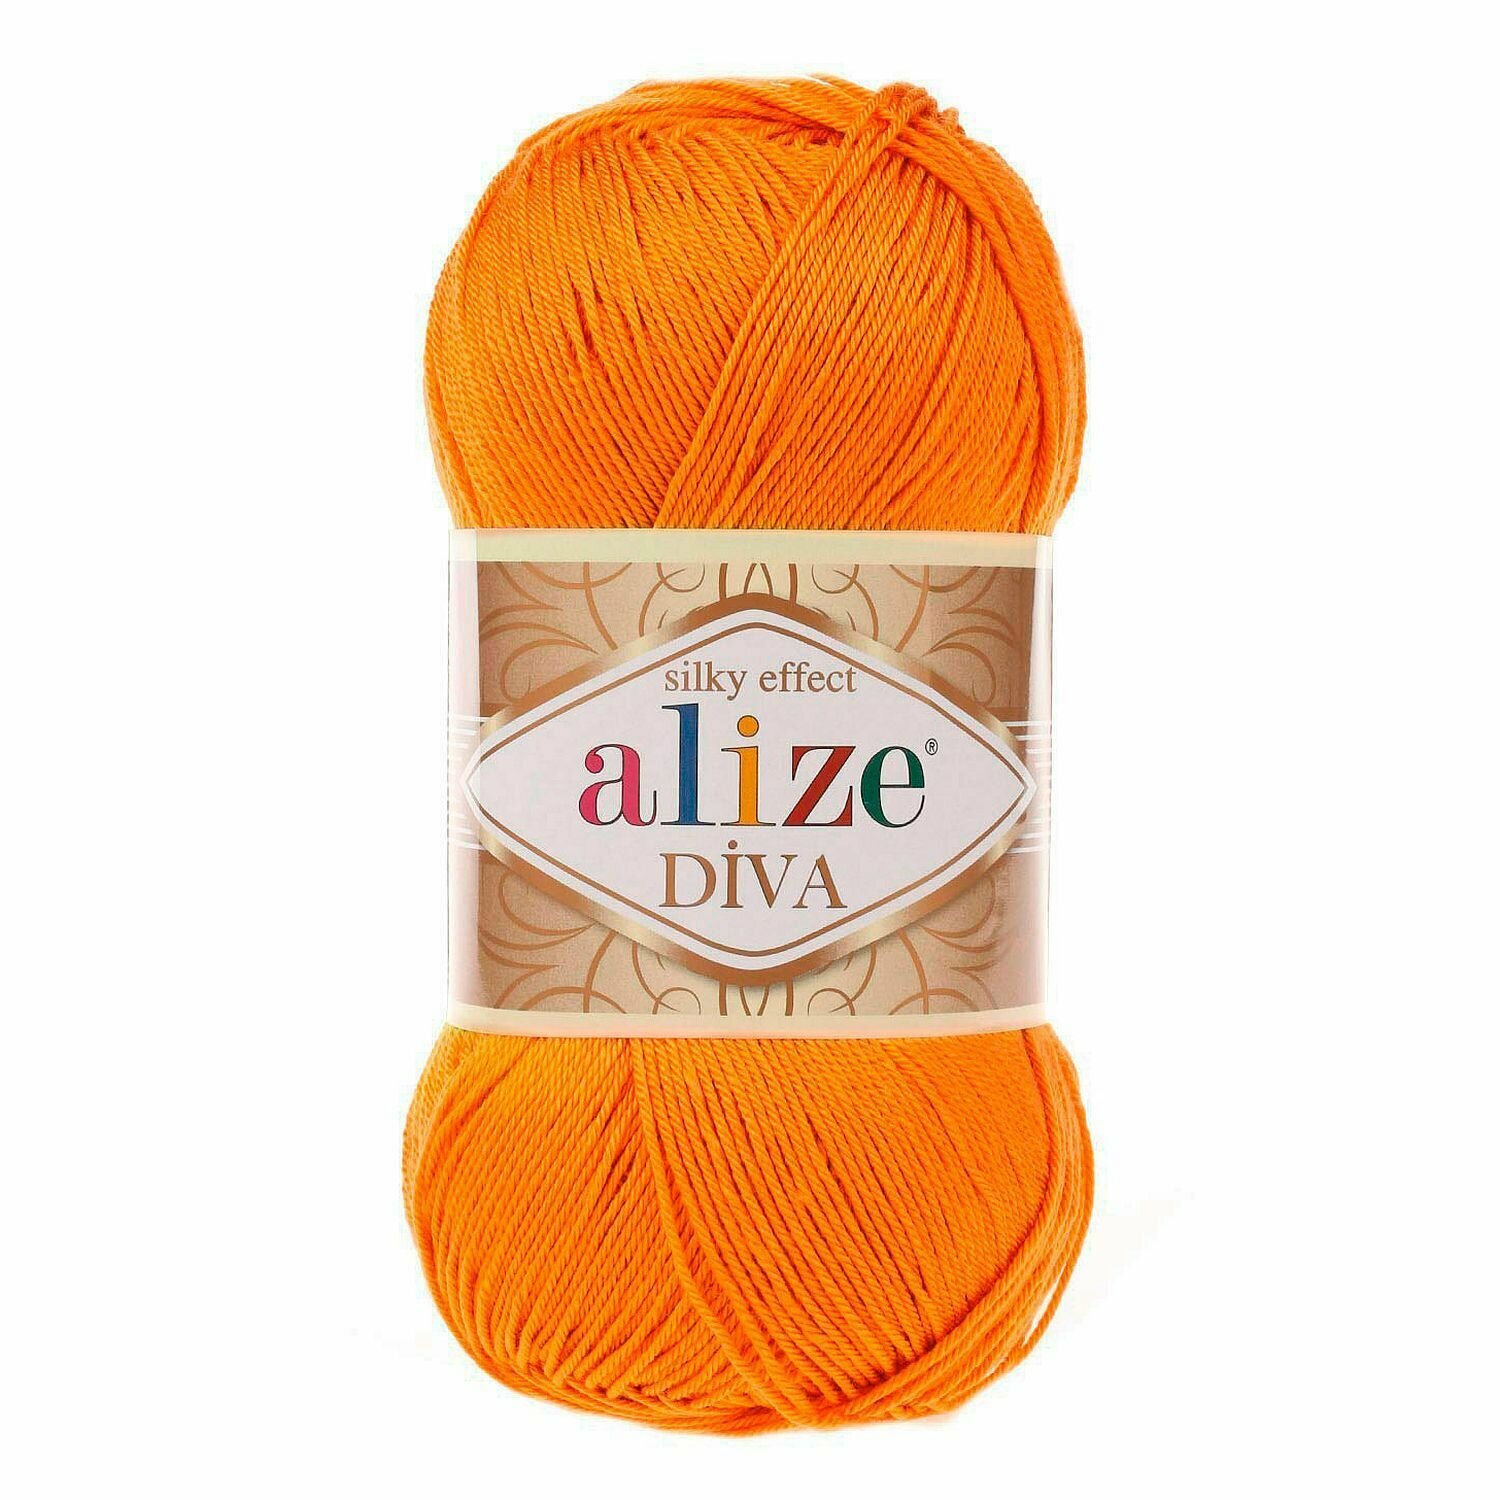 Пряжа ALIZE DIVA, оранжевый - 120, 100% микрофибра акрил, 5 мотков, 100 г, 350 м.